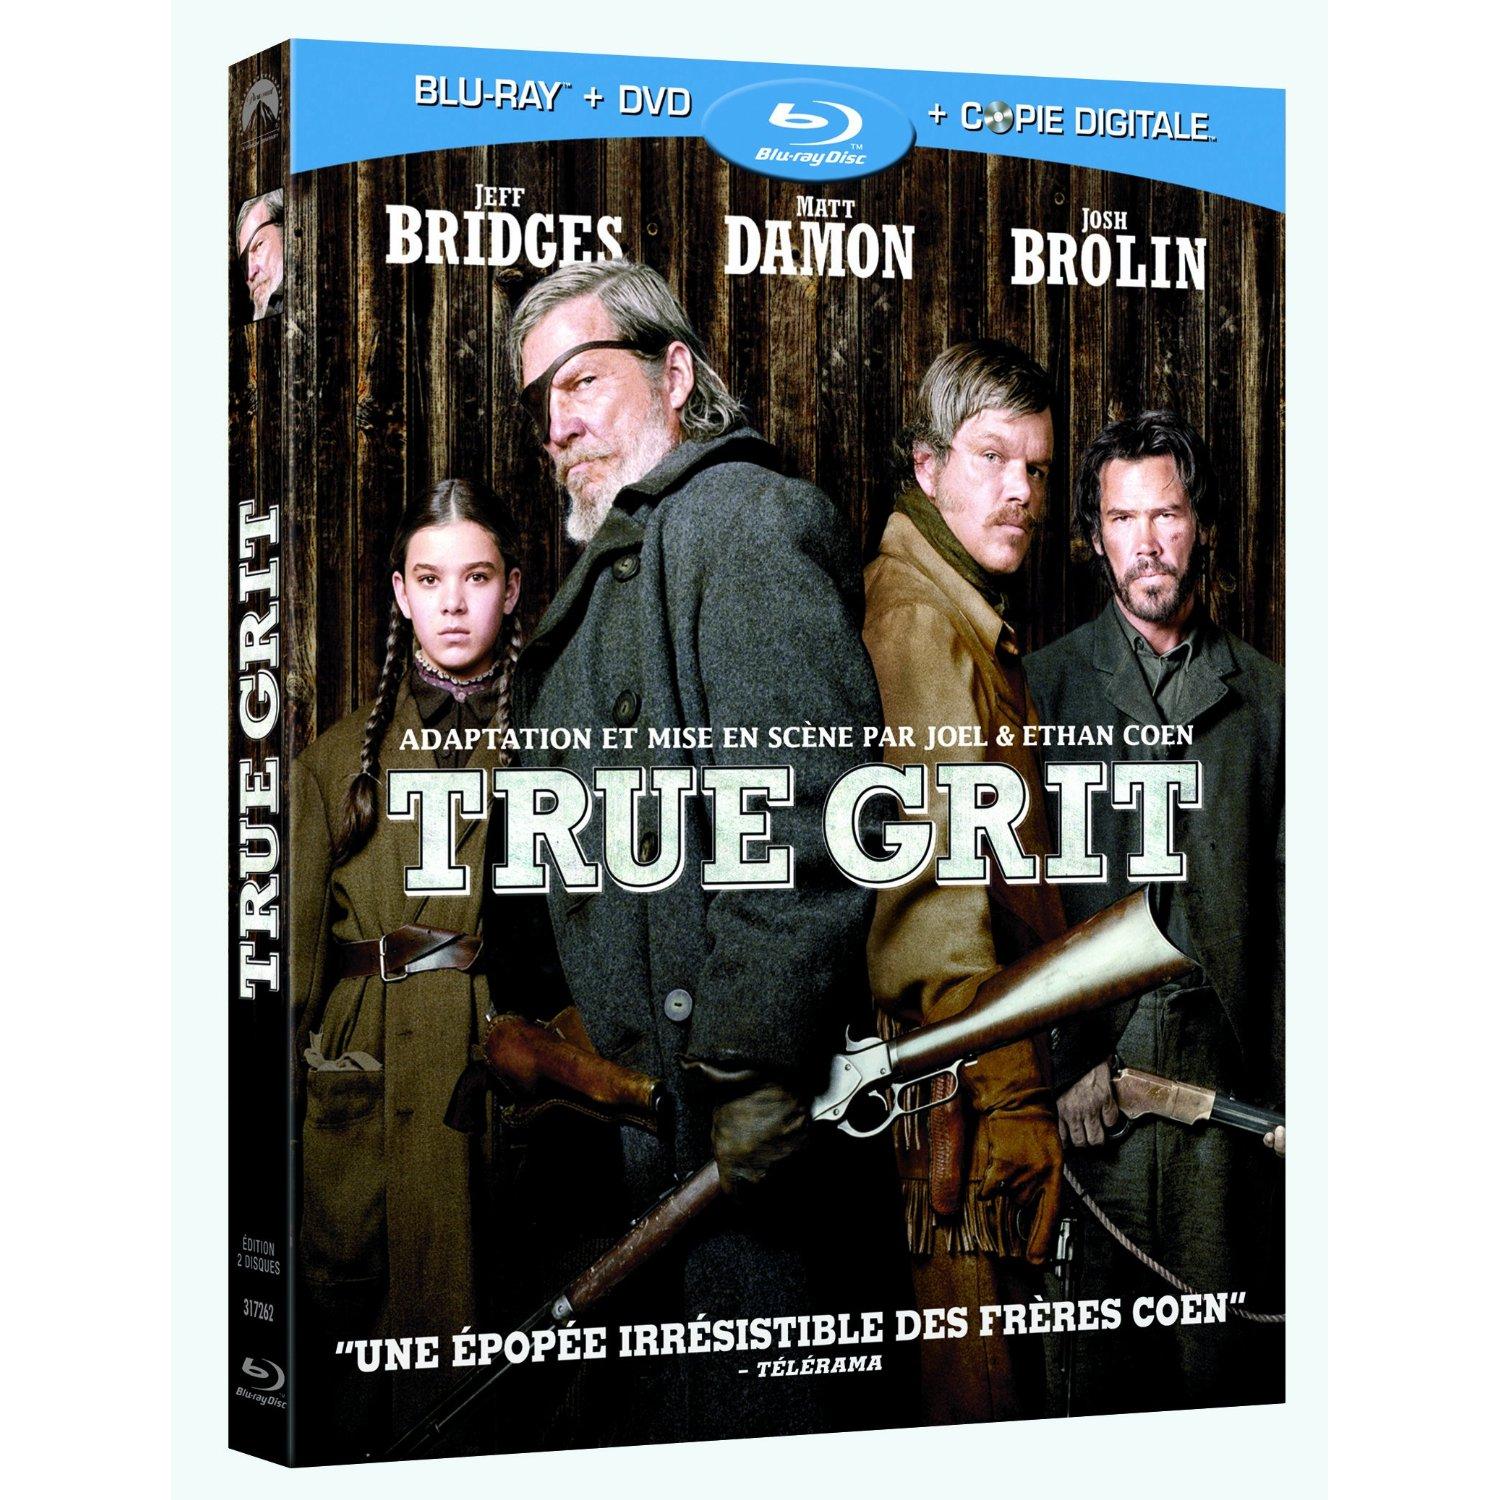 True Grit : un Blu-ray too great